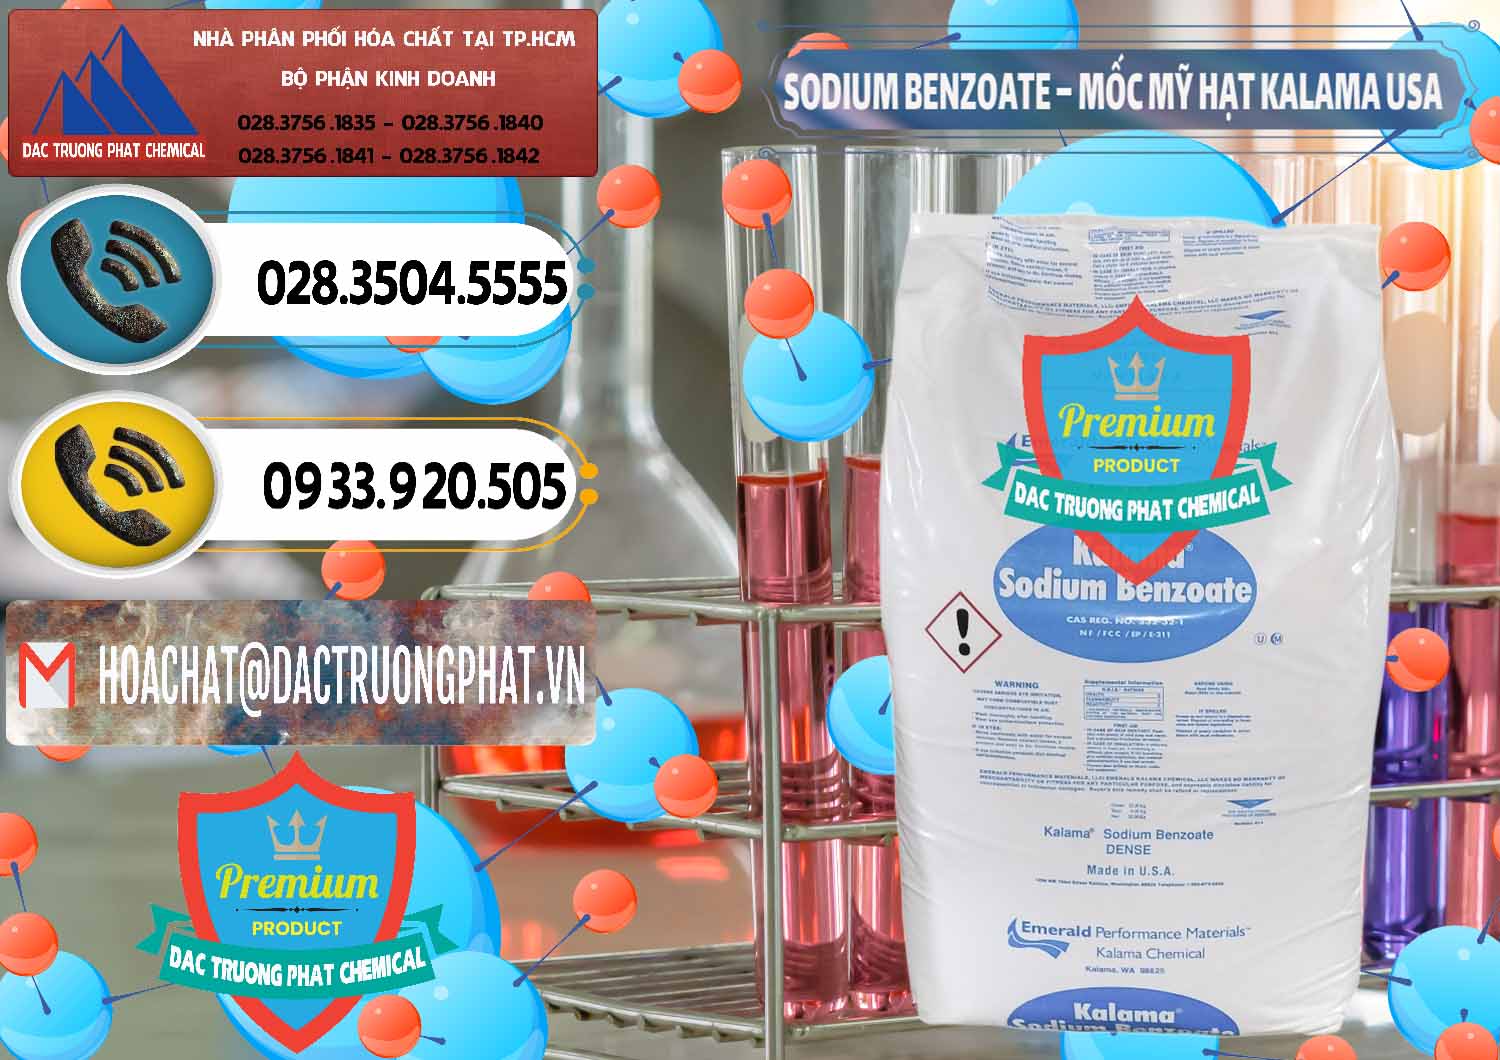 Chuyên bán và cung cấp Sodium Benzoate - Mốc Hạt Kalama Food Grade Mỹ Usa - 0137 - Phân phối & nhập khẩu hóa chất tại TP.HCM - hoachatdetnhuom.vn